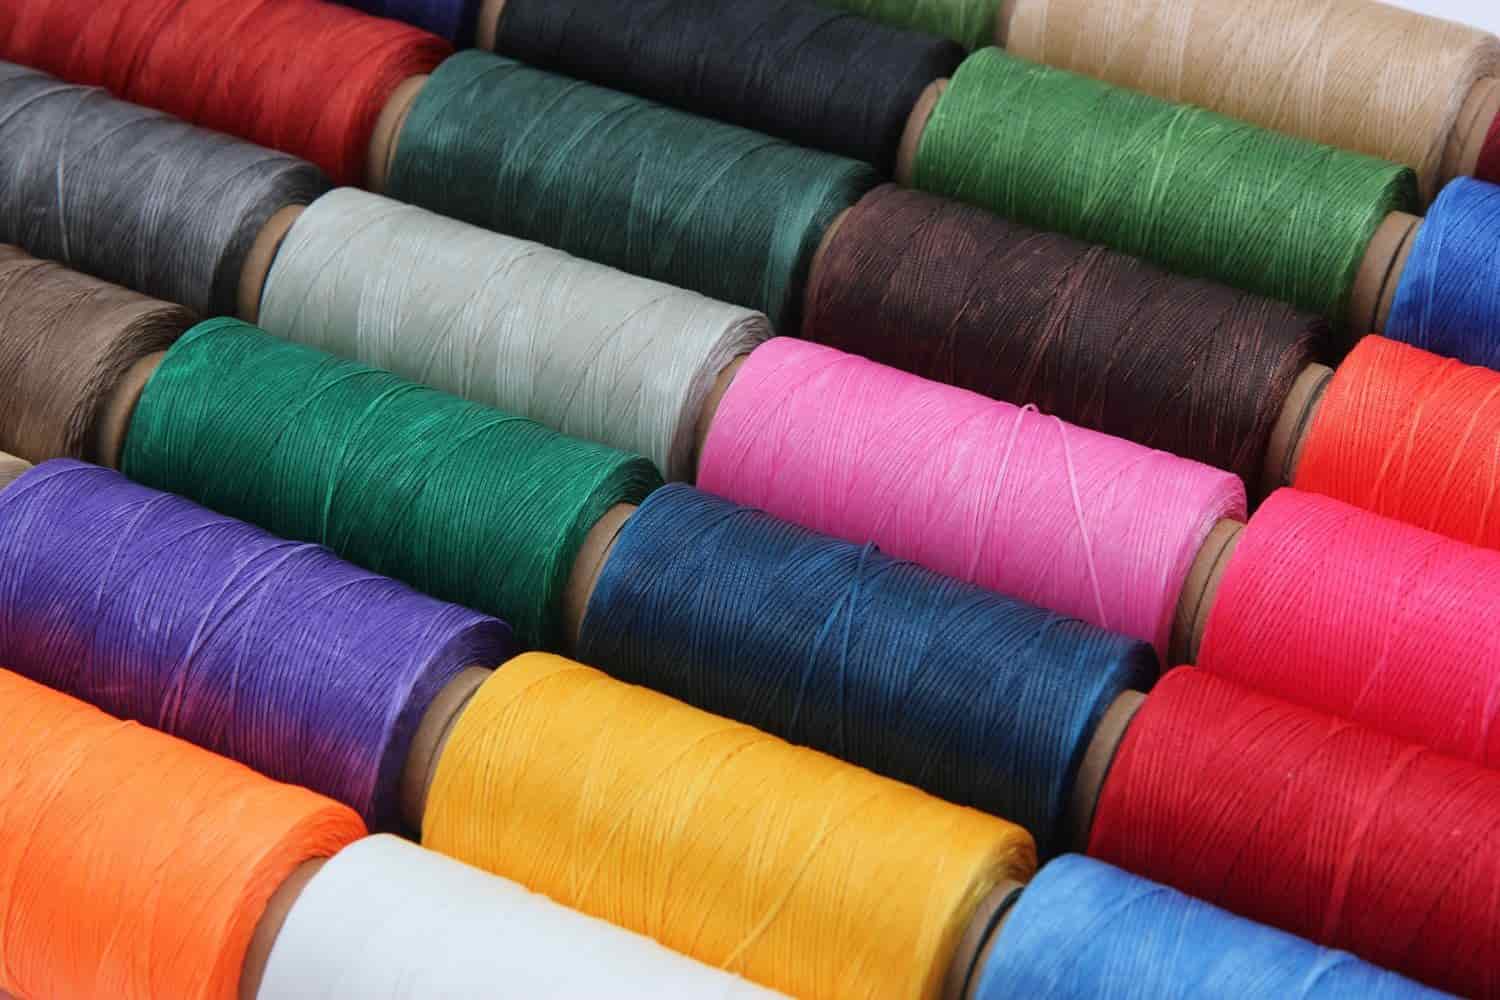  خيط الحرير في مصر؛ ناعمة الملمس 2 إستخدامات نسج السجاد الأقمشة 